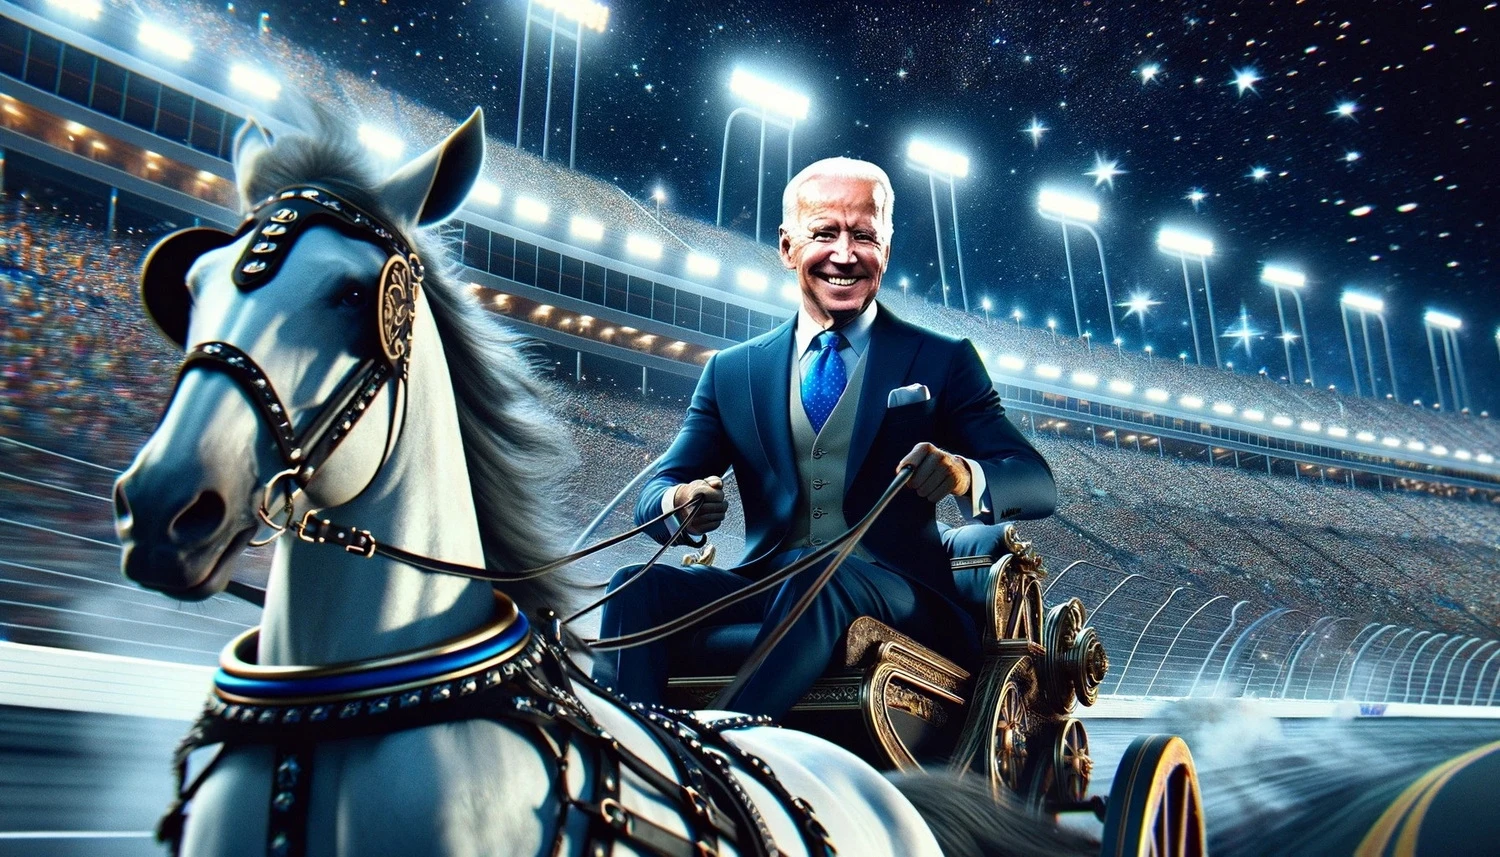 Joe Biden ride chariot on NASCAR stadium